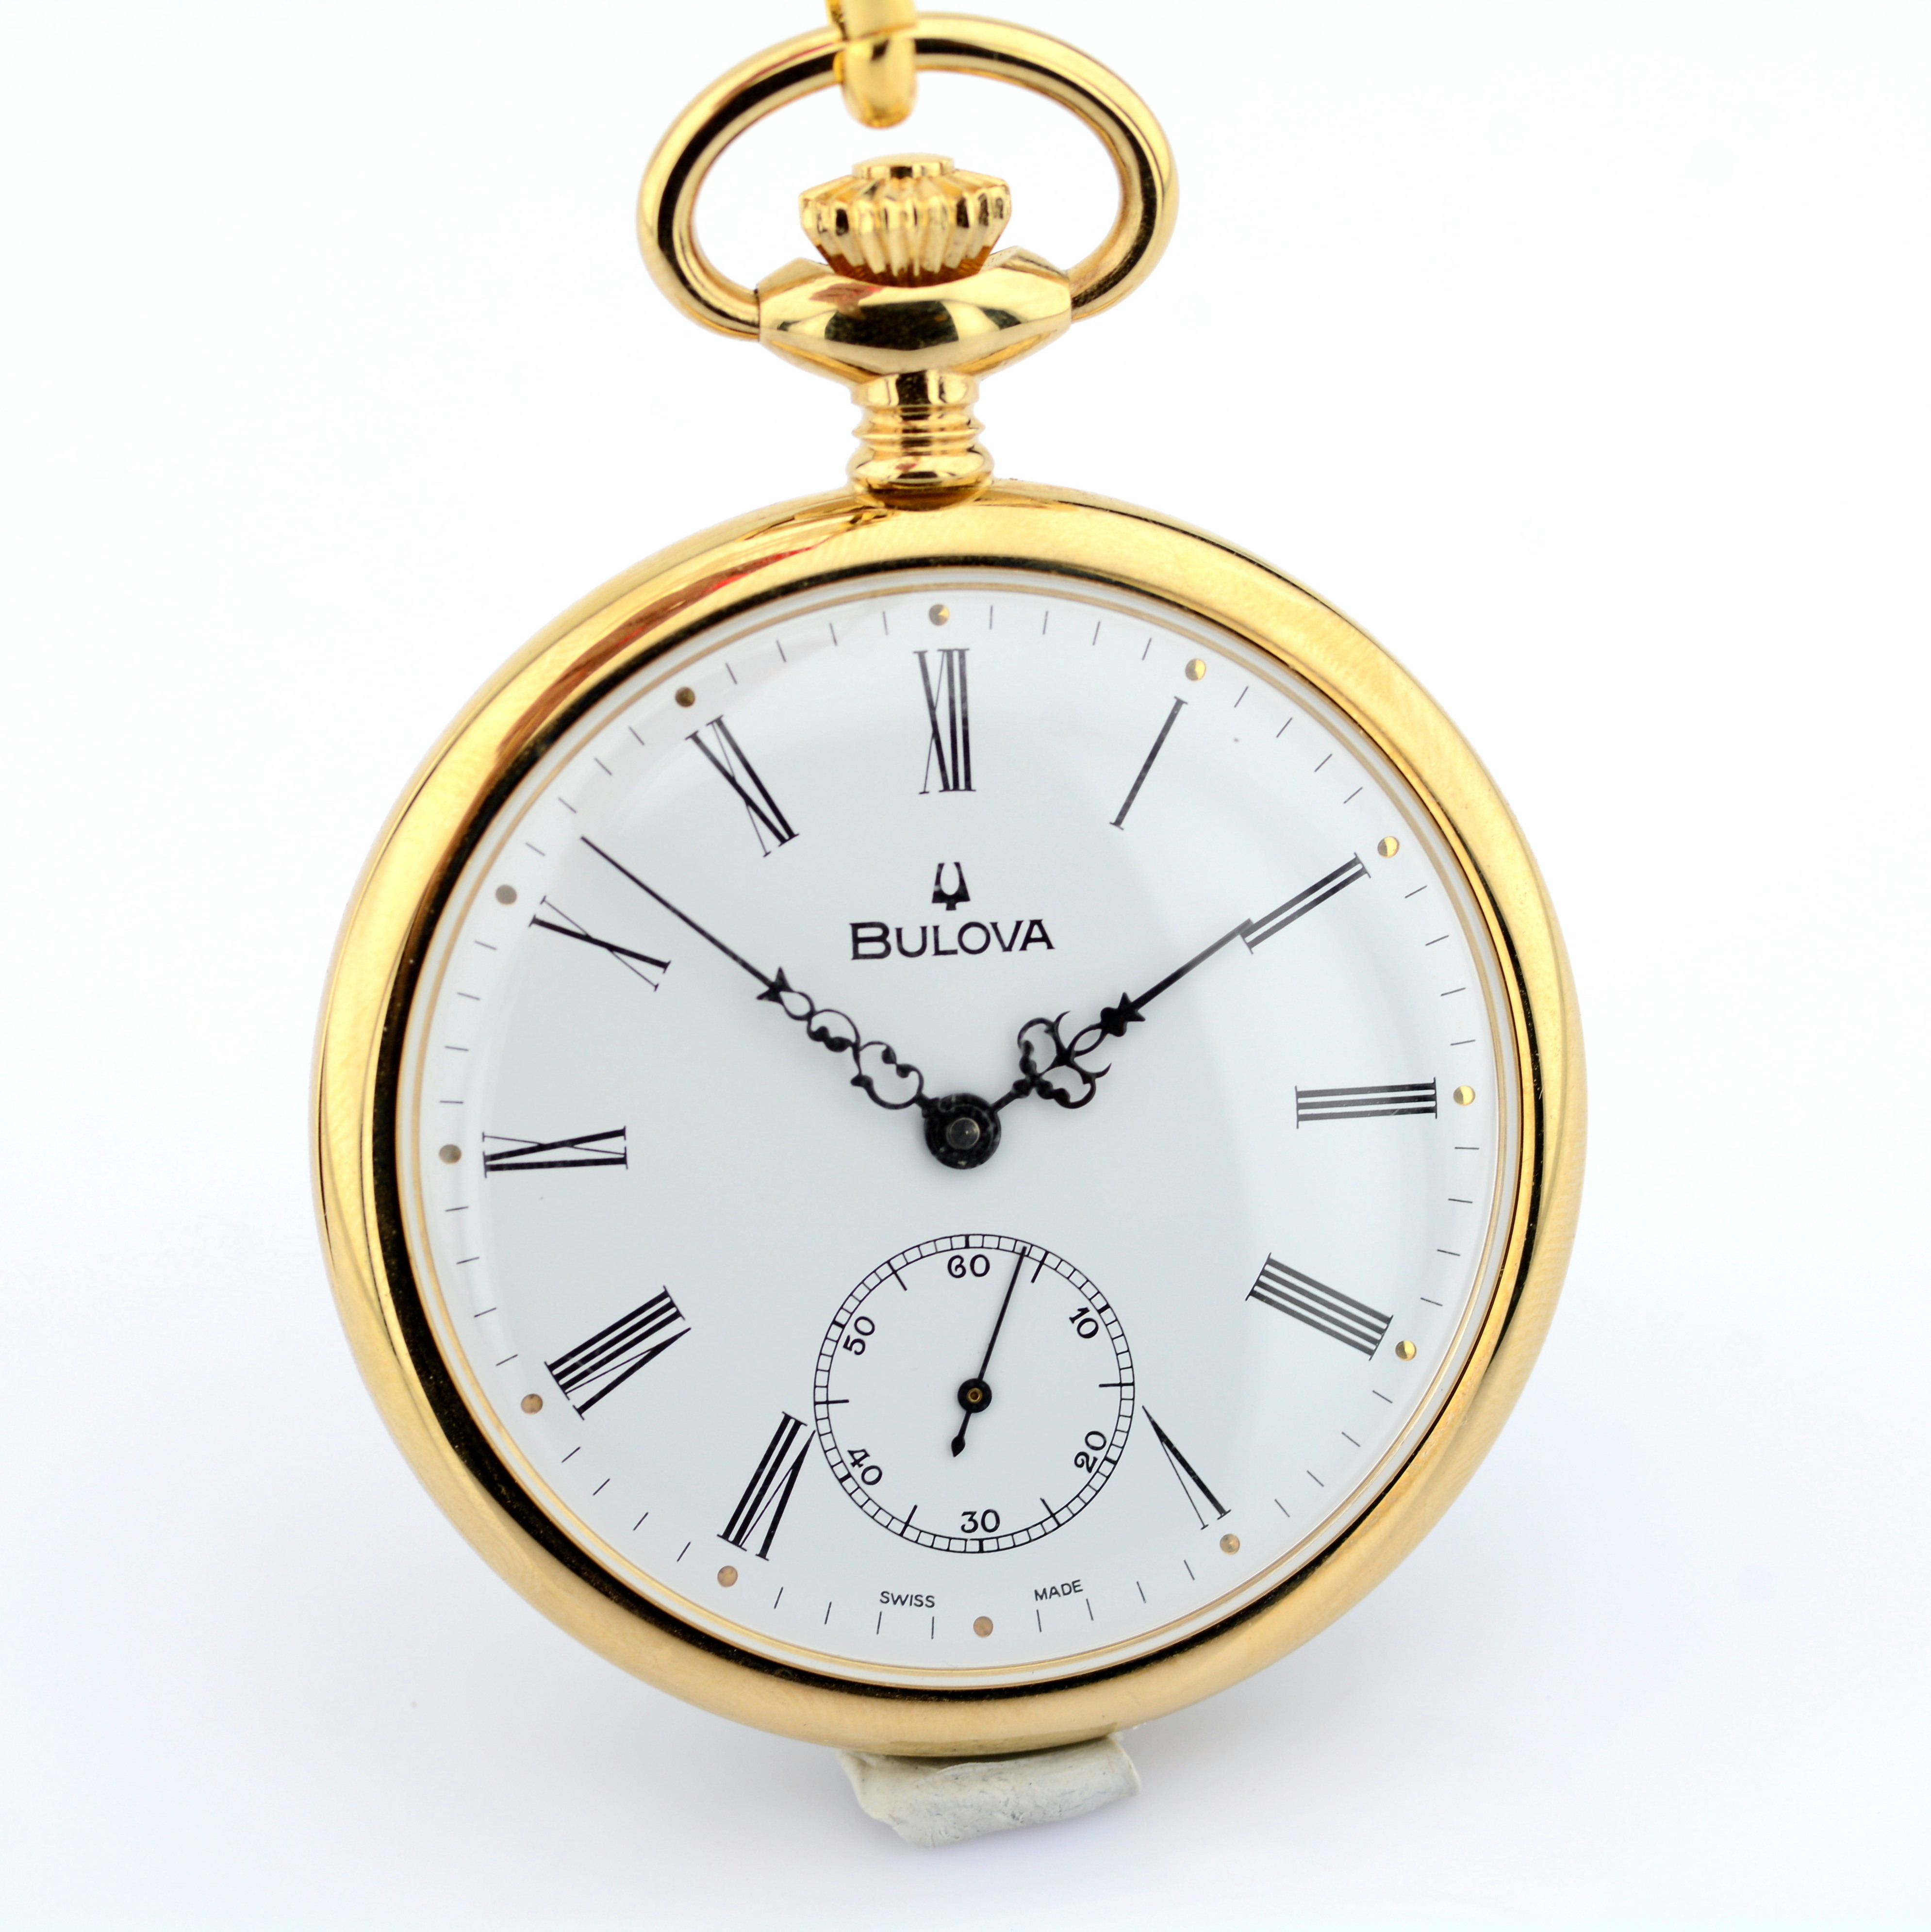 Bulova / Pocket Watch - Gentlmen's Gold/Steel Wrist Watch